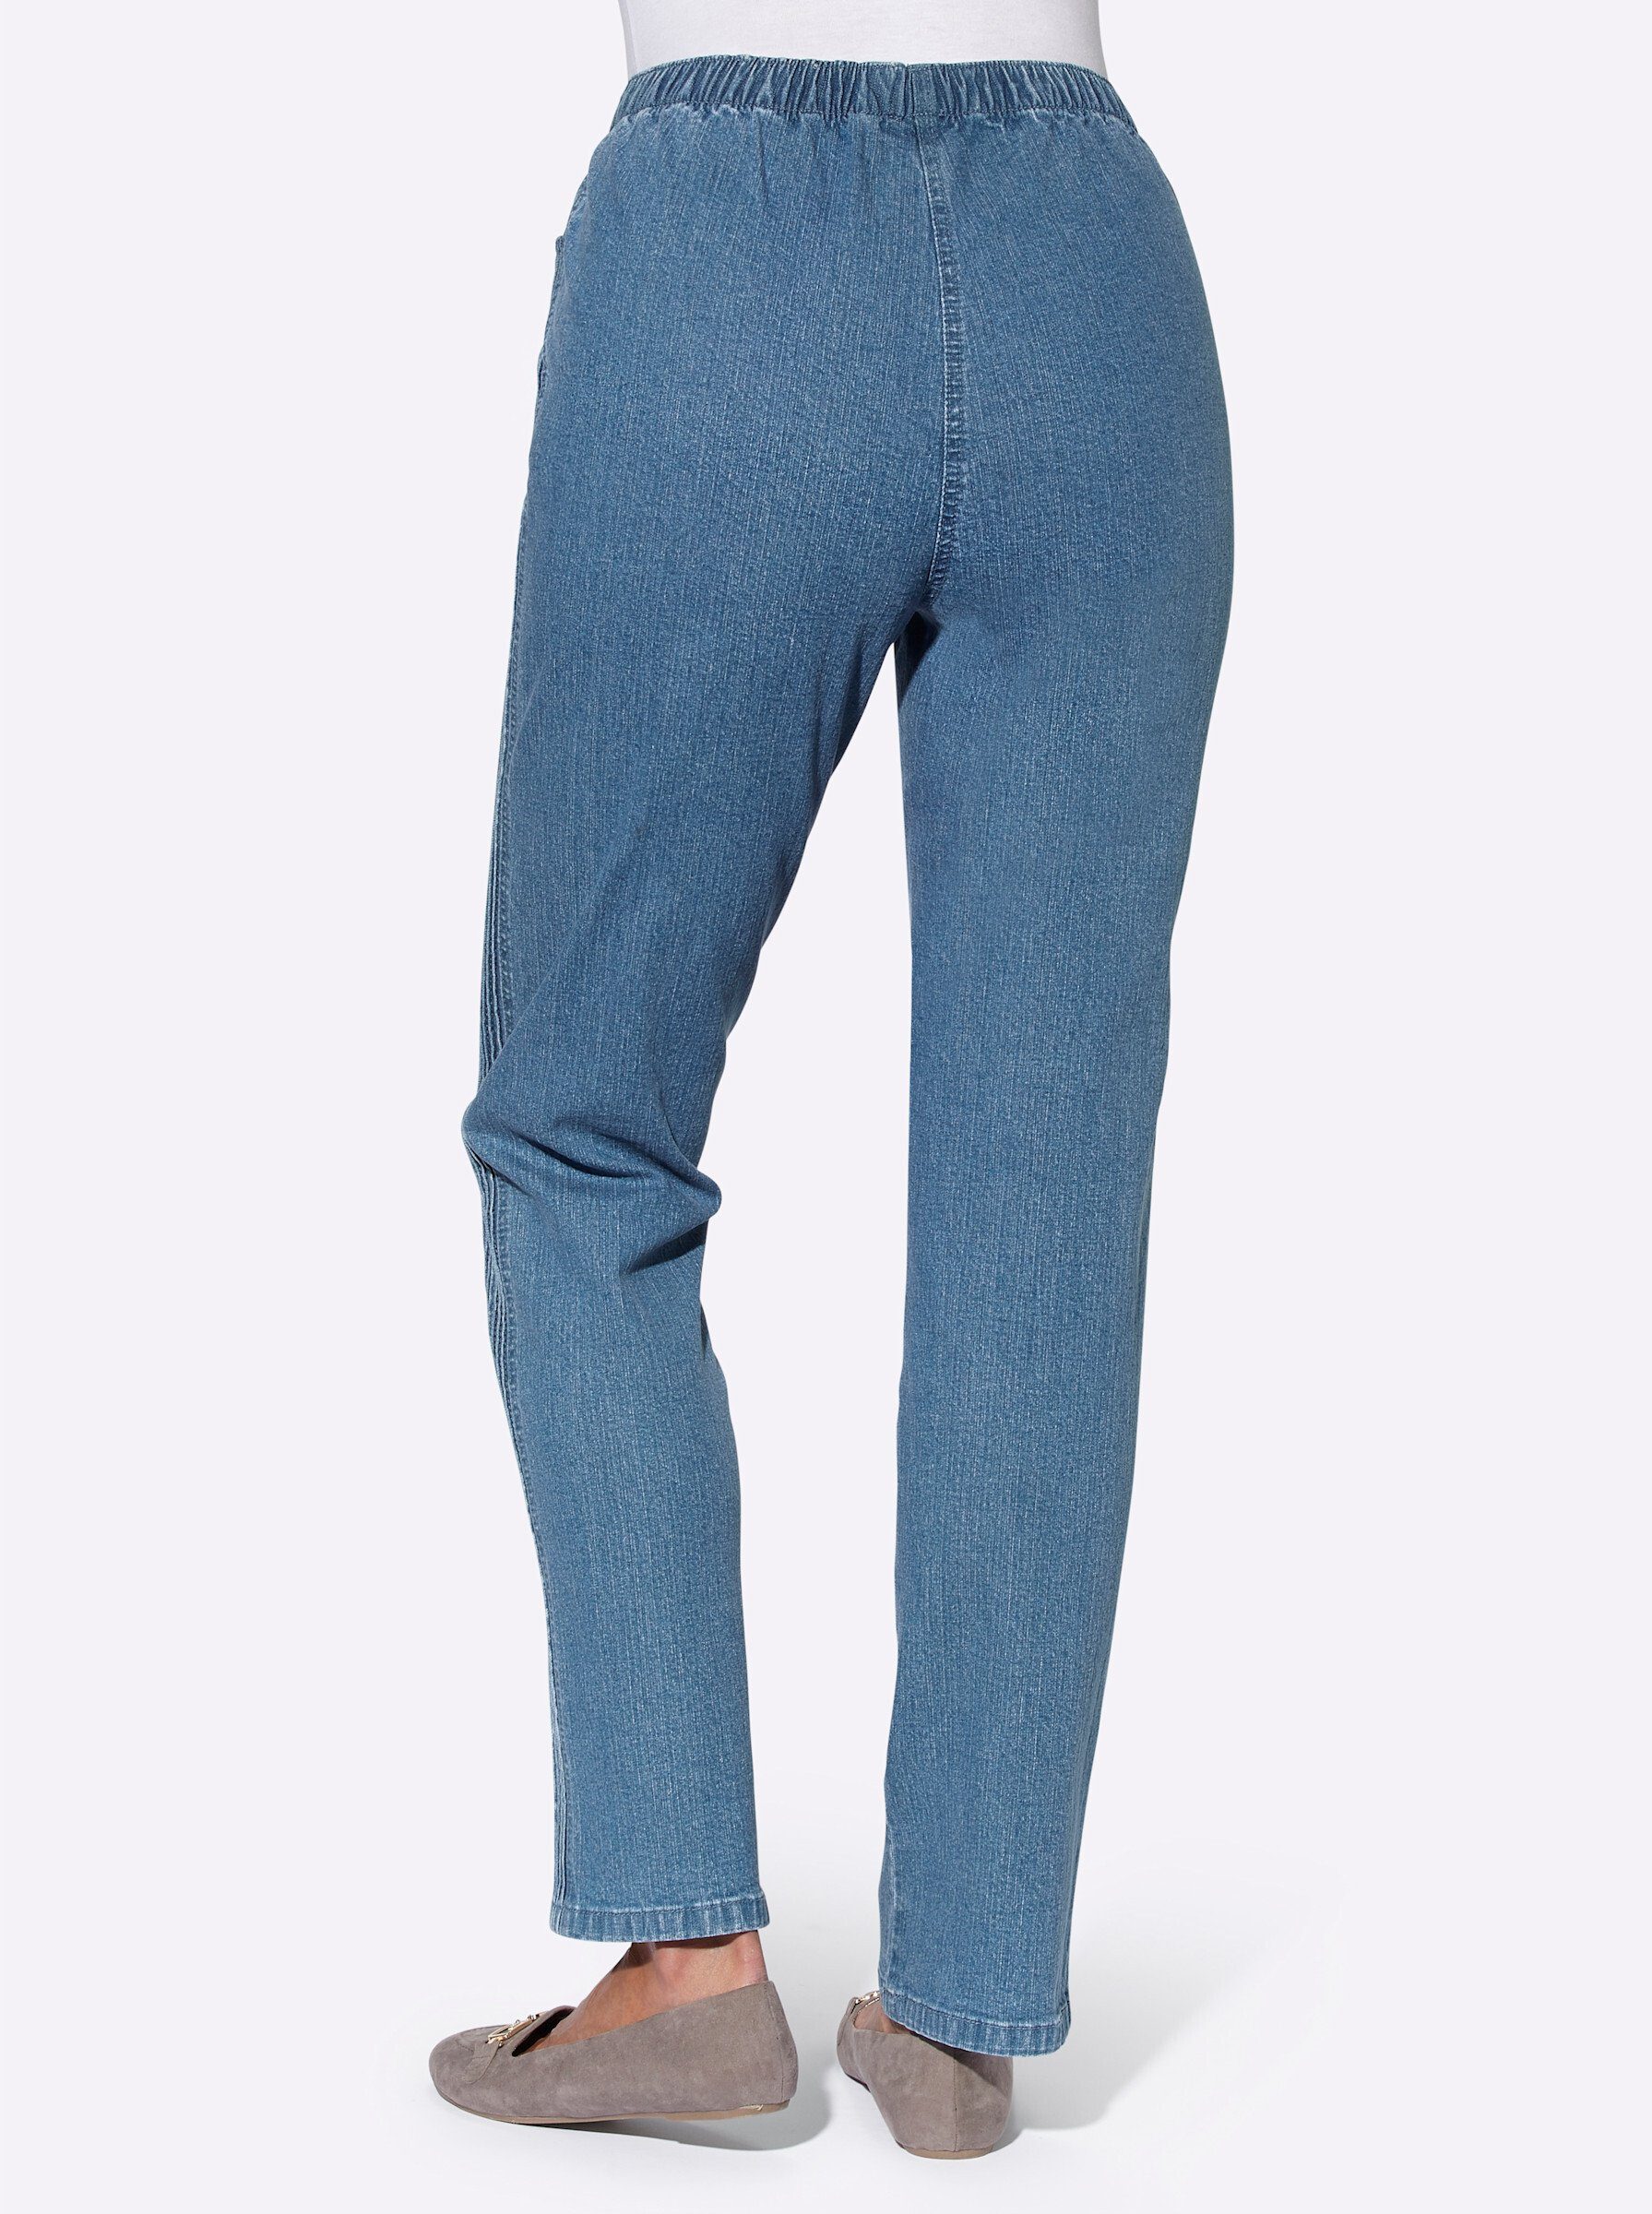 WITT WEIDEN Bequeme Jeans blue-bleached